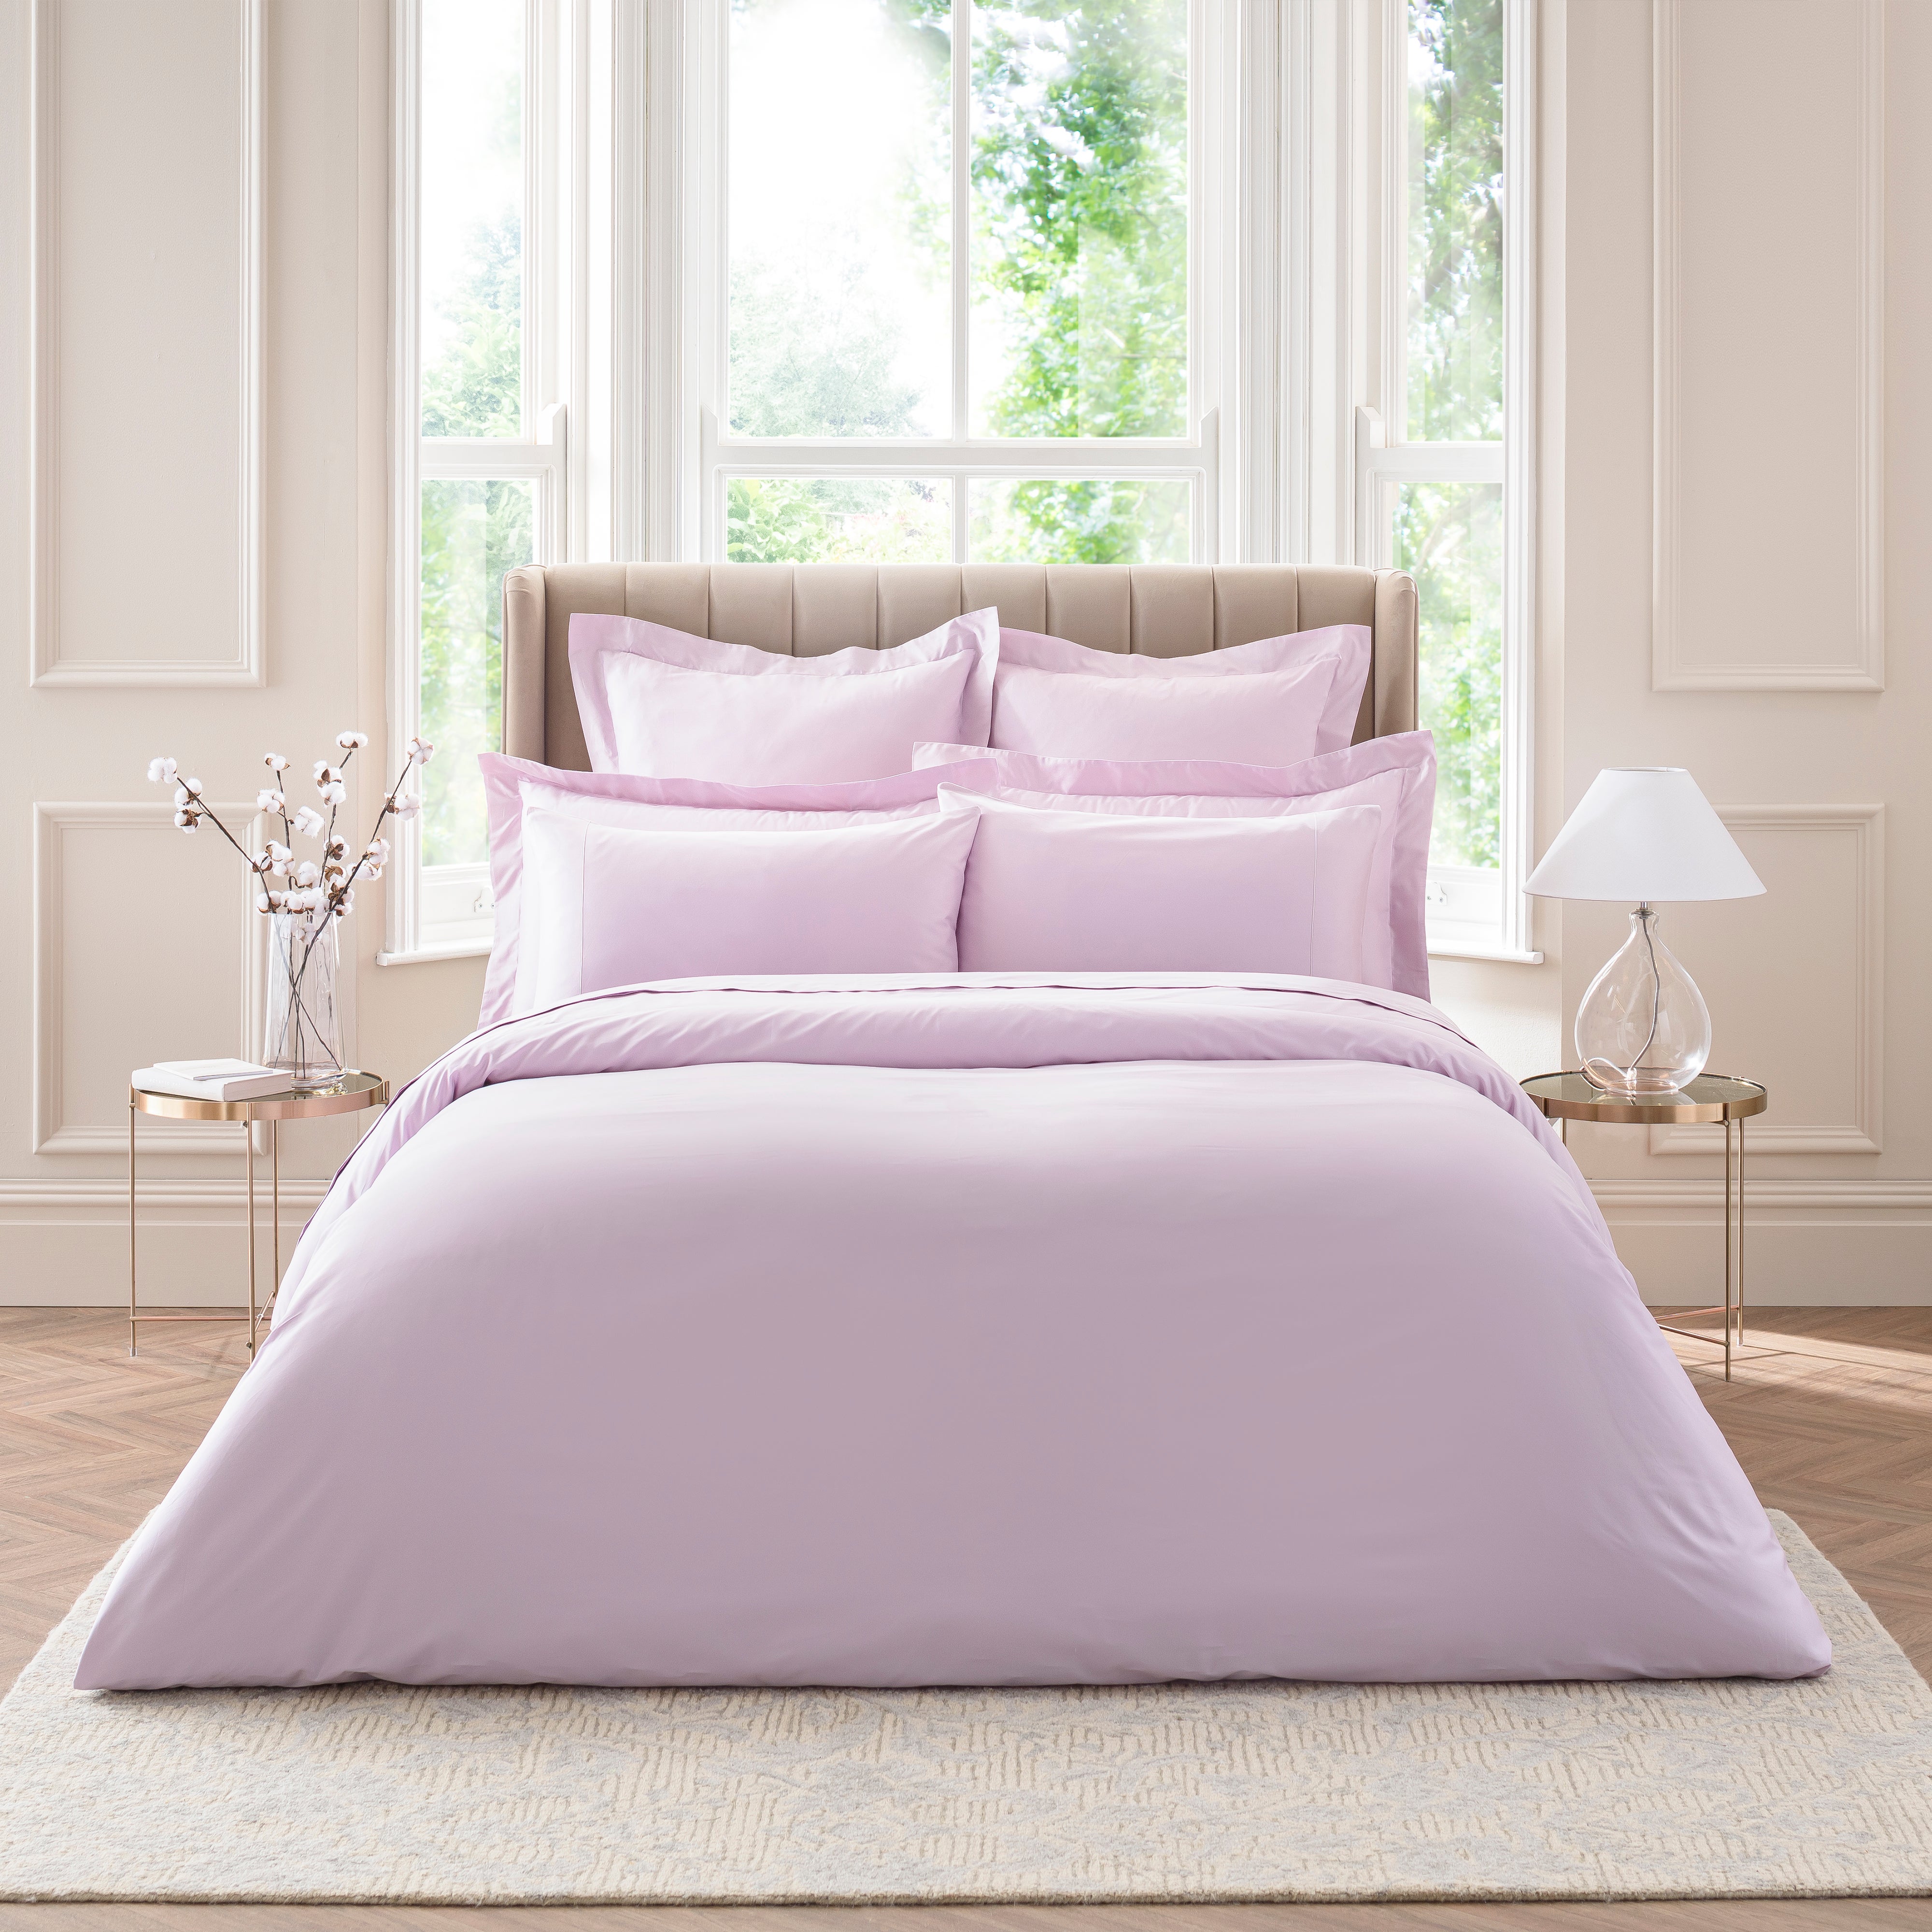 Dorma 300 Thread Count Mauve Cotton Sateen Duvet Cover Purple